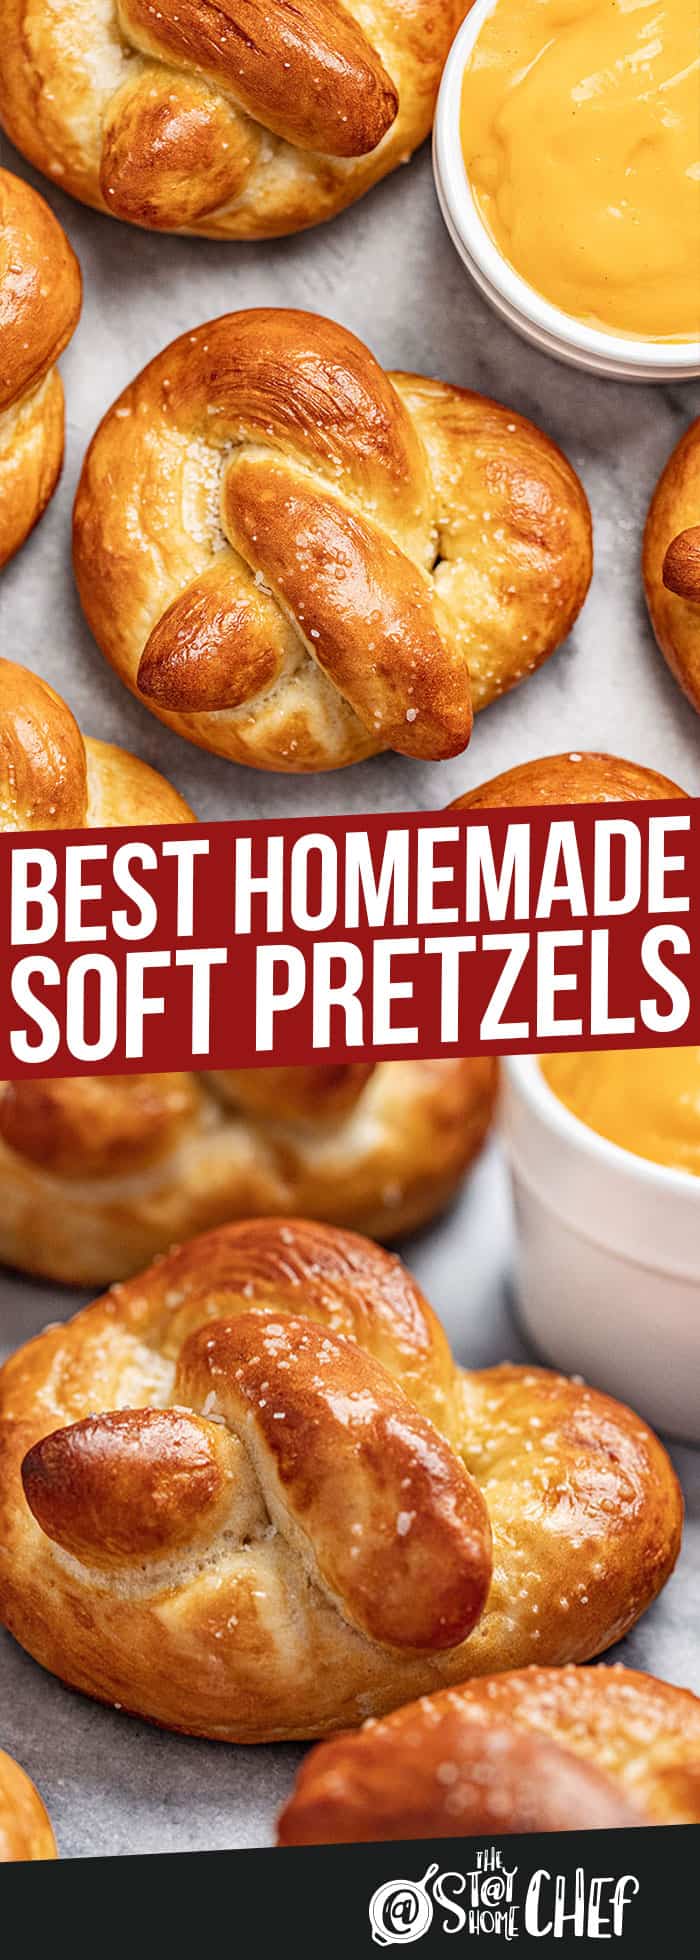 The Best Homemade Soft Pretzels